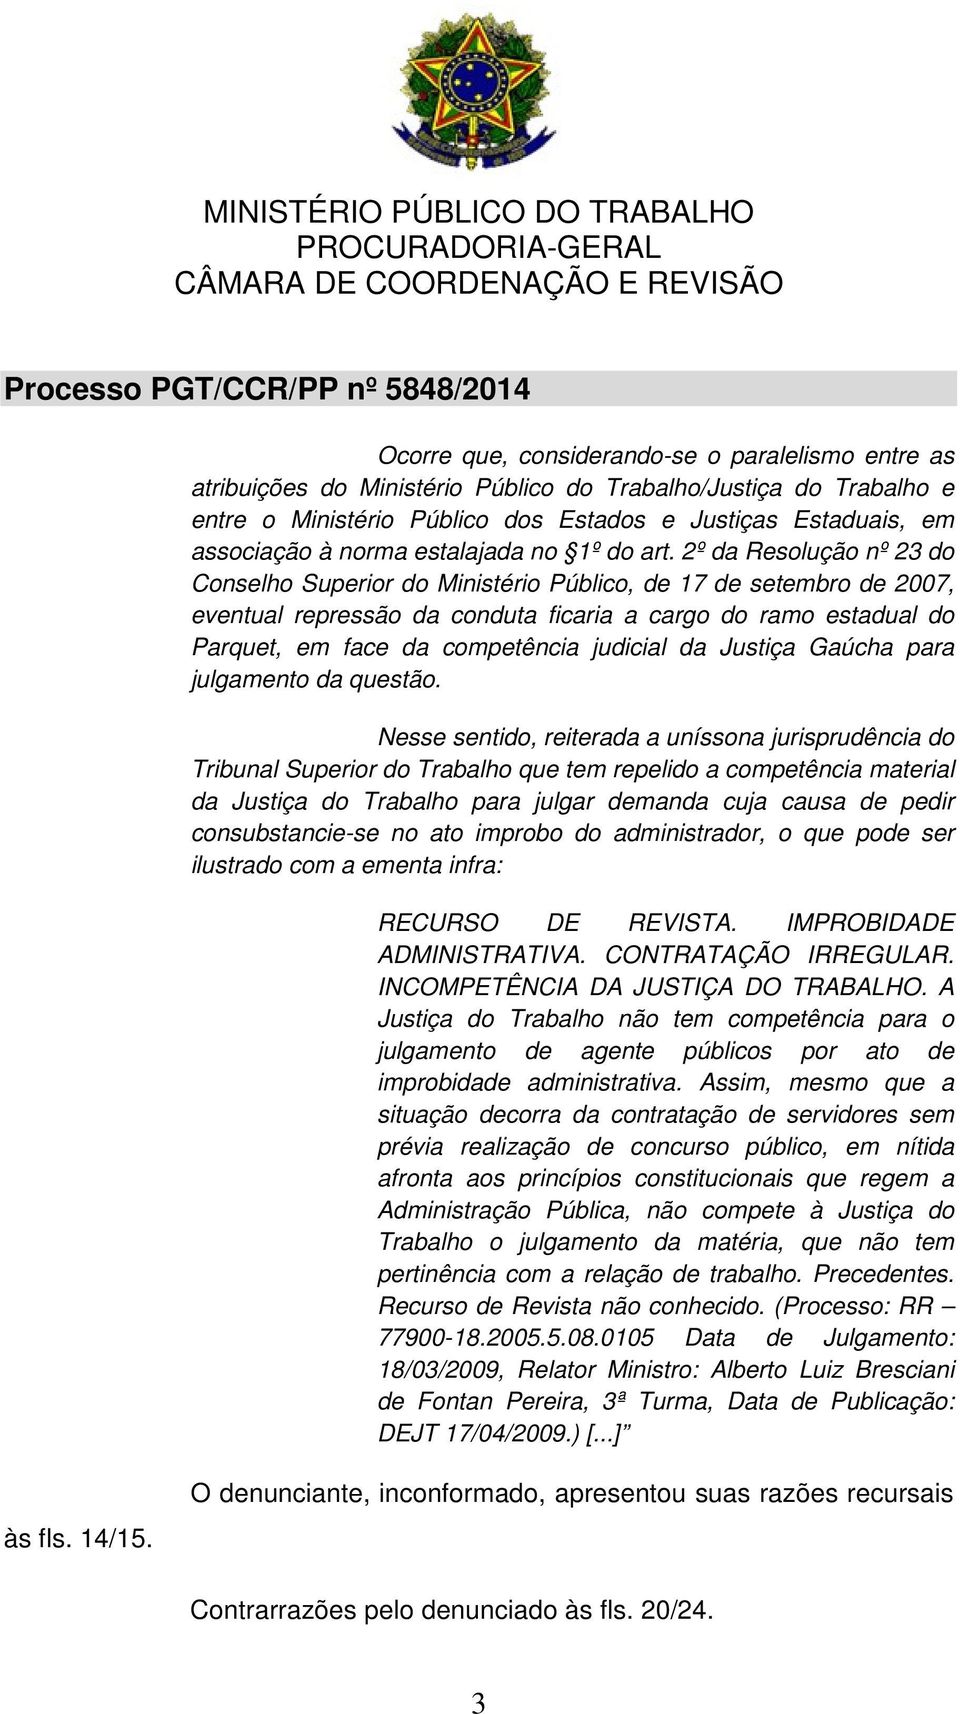 2º da Resolução nº 23 do Conselho Superior do Ministério Público, de 17 de setembro de 2007, eventual repressão da conduta ficaria a cargo do ramo estadual do Parquet, em face da competência judicial